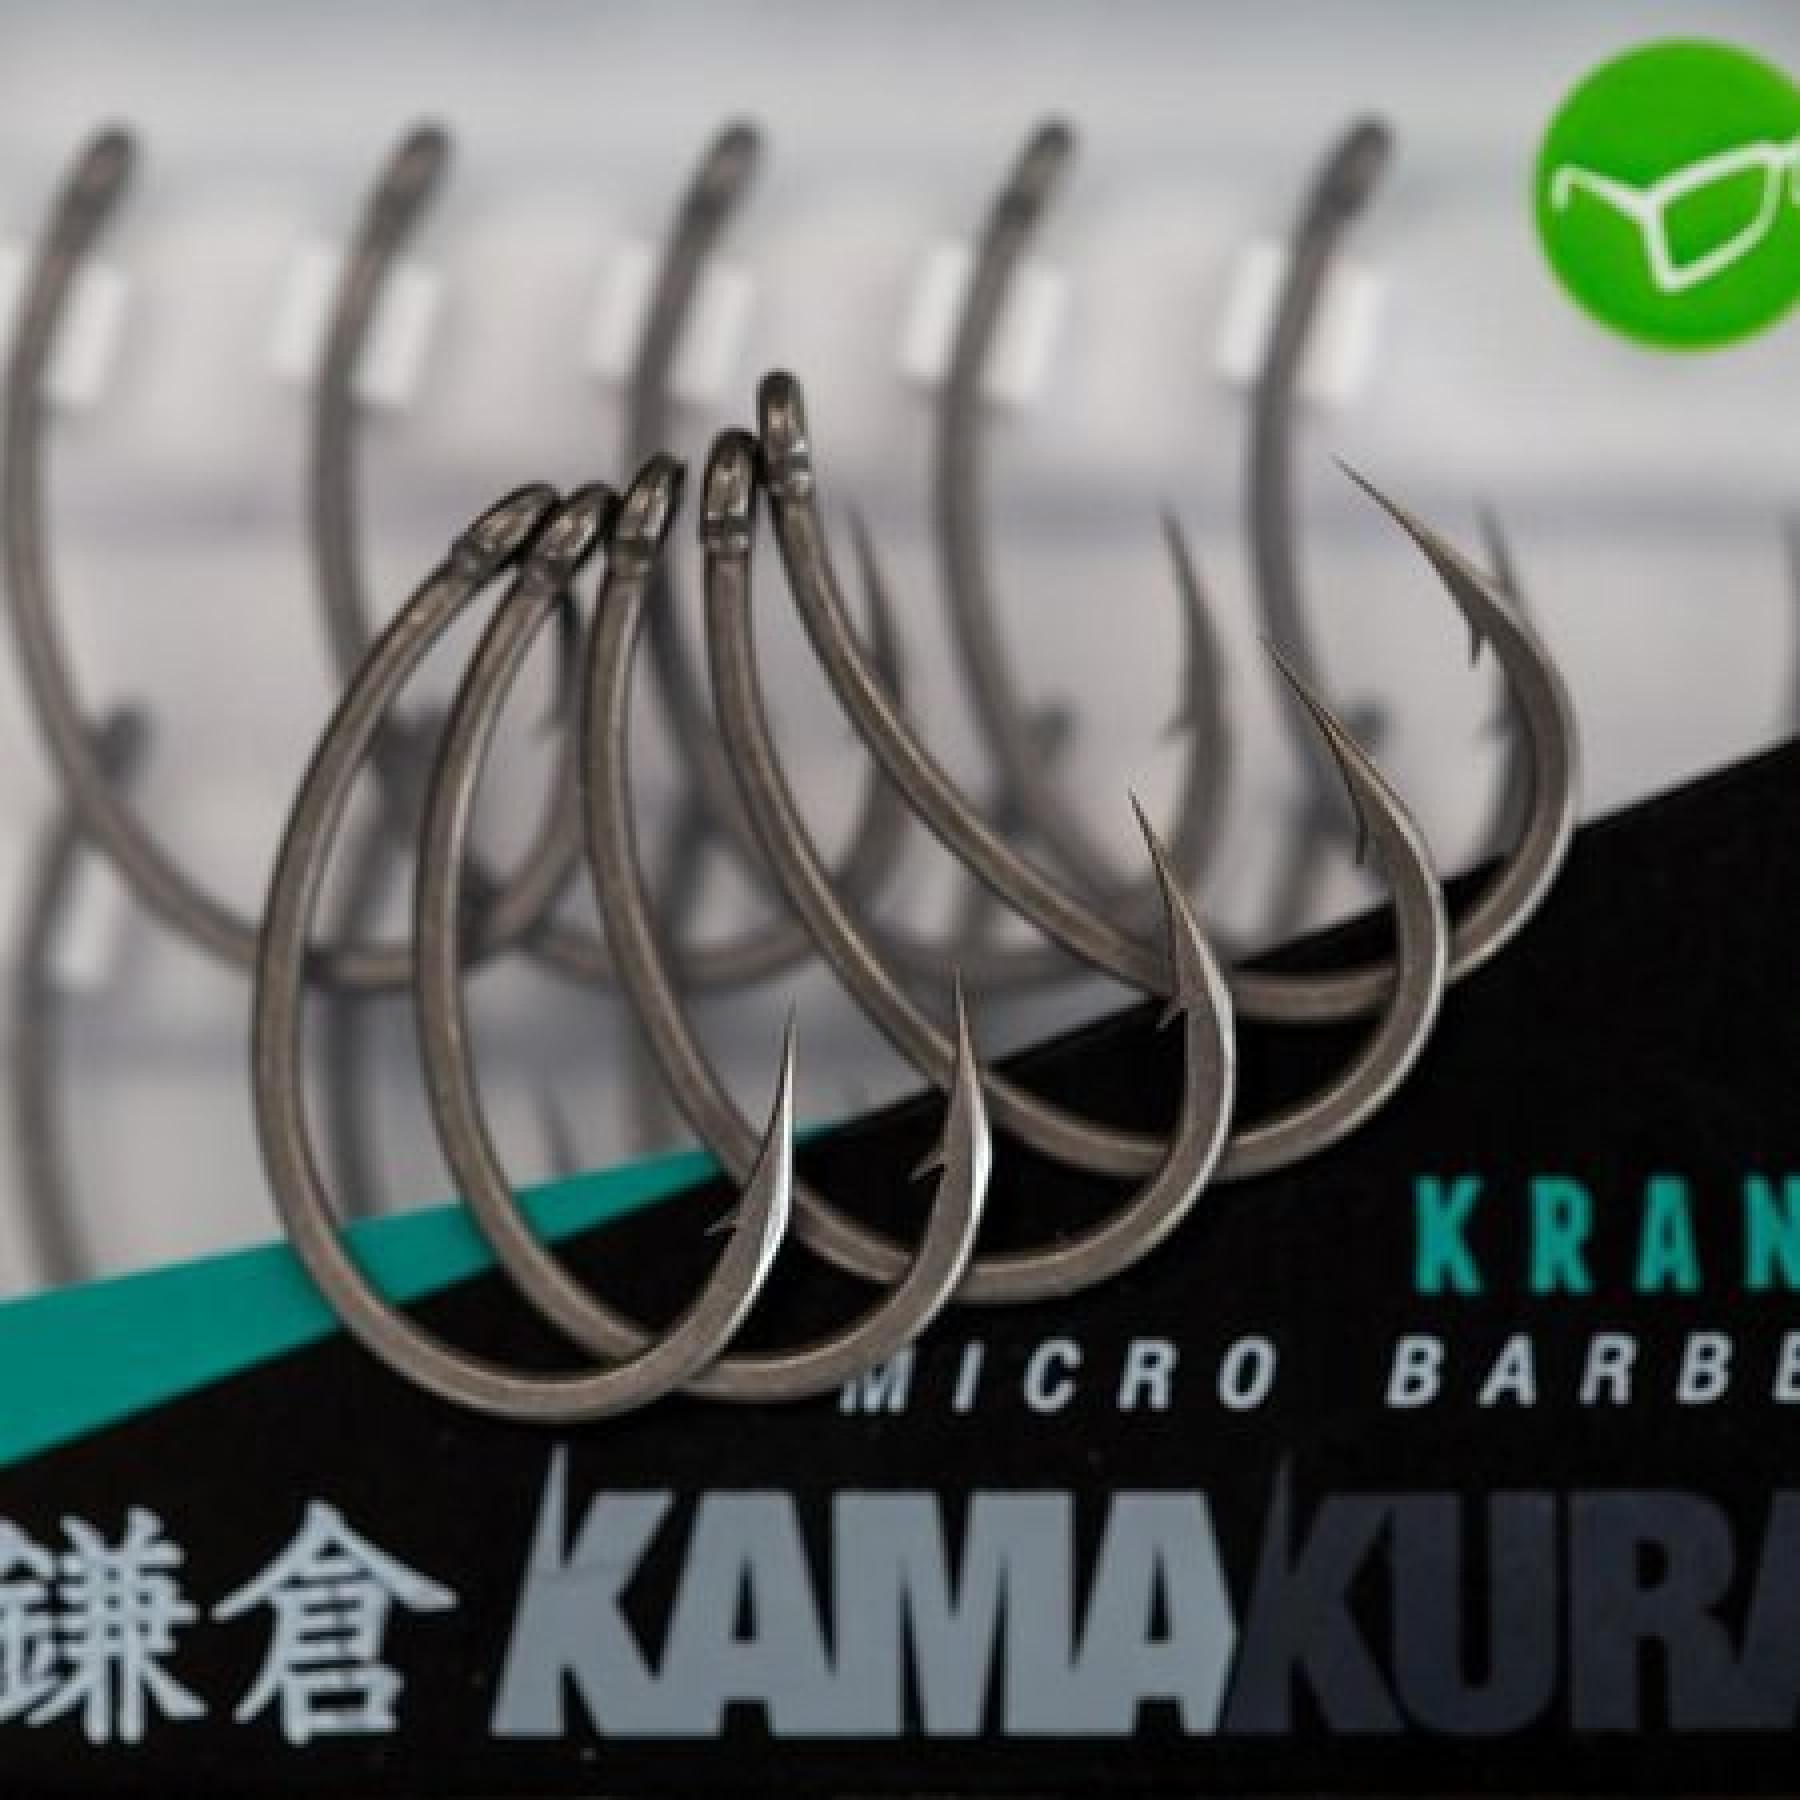 Hak korda Kamakura Krank Barbless S4